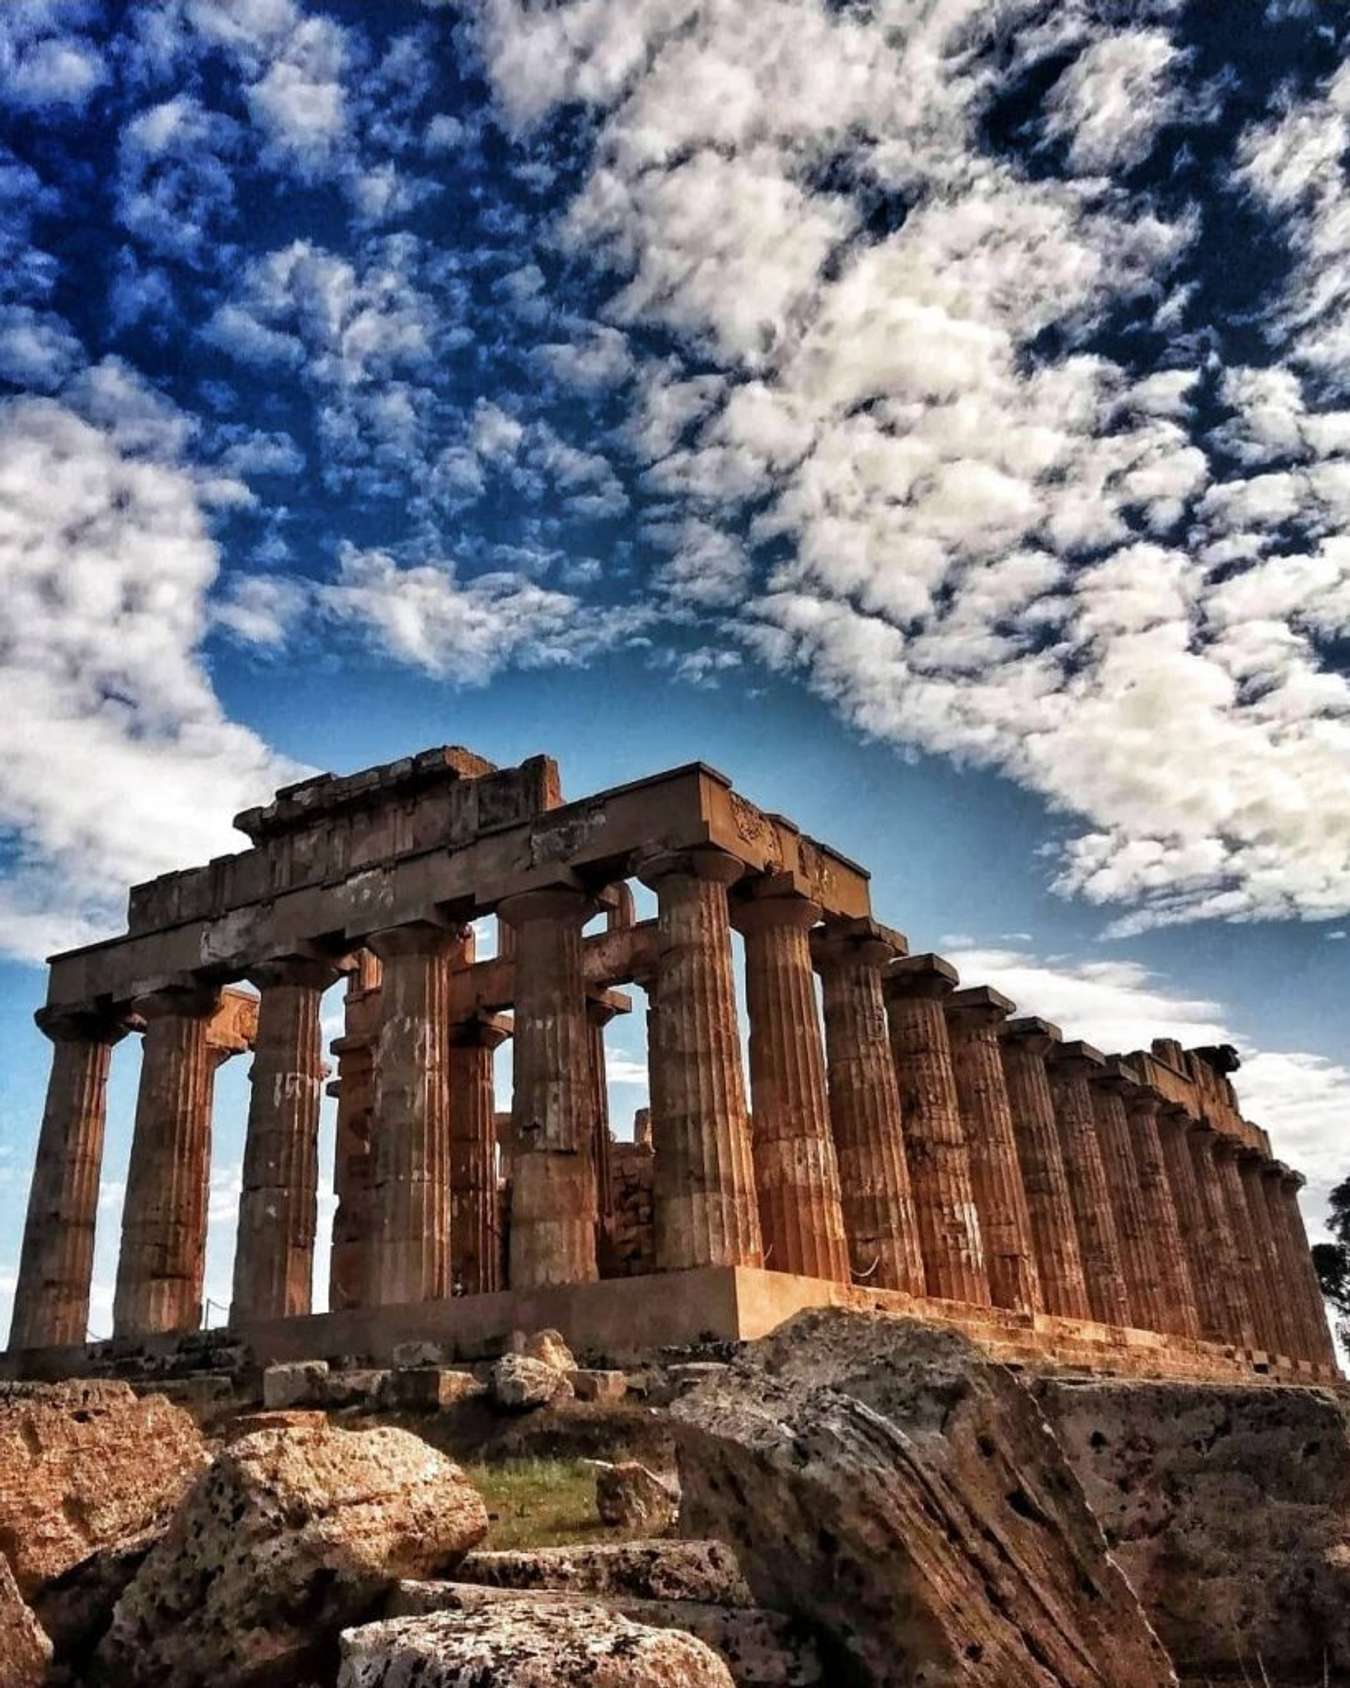 Du lịch Hy Lạp là chuyến đi tuyệt vời để khám phá văn hóa cổ đại của thế giới. Các địa điểm du lịch nổi tiếng như Athens, Santorini hay Olympia đều đưa bạn đến những khu di tích lịch sử nổi tiếng và ngoài ra còn có rất nhiều cảnh quan thiên nhiên đẹp lung linh ở đây, đảm bảo sẽ làm bạn ngạc nhiên.